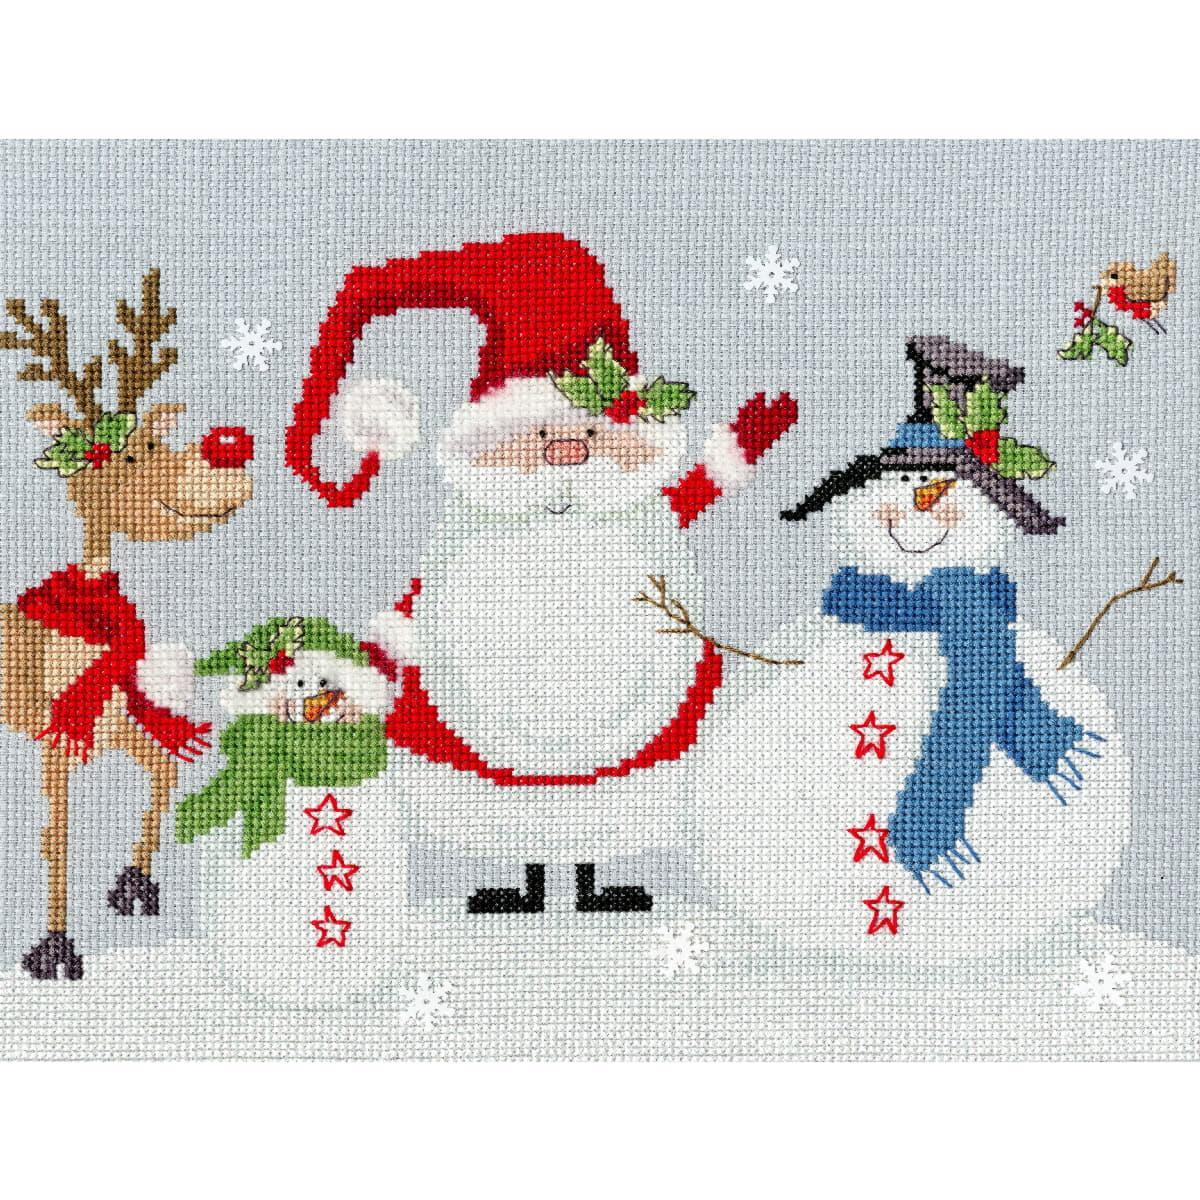 A festive scene with a cross stitch design featuring a...